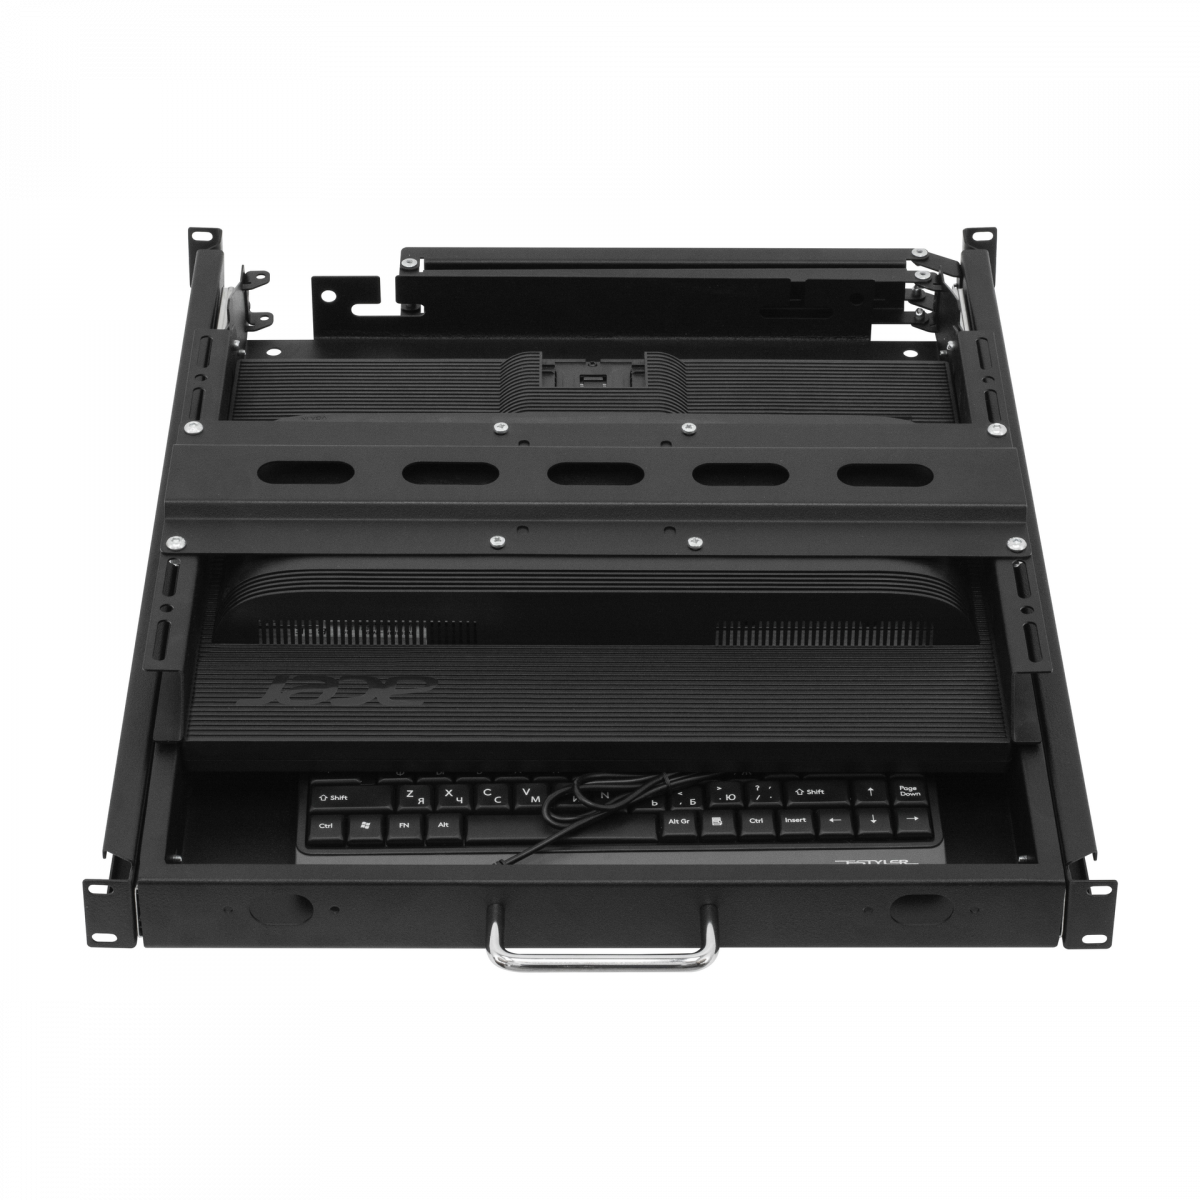 Полка выдвижная с монитором 19" и клавиатурой в шкафы глубиной 800 мм (глубина полки 550мм), цвет черный